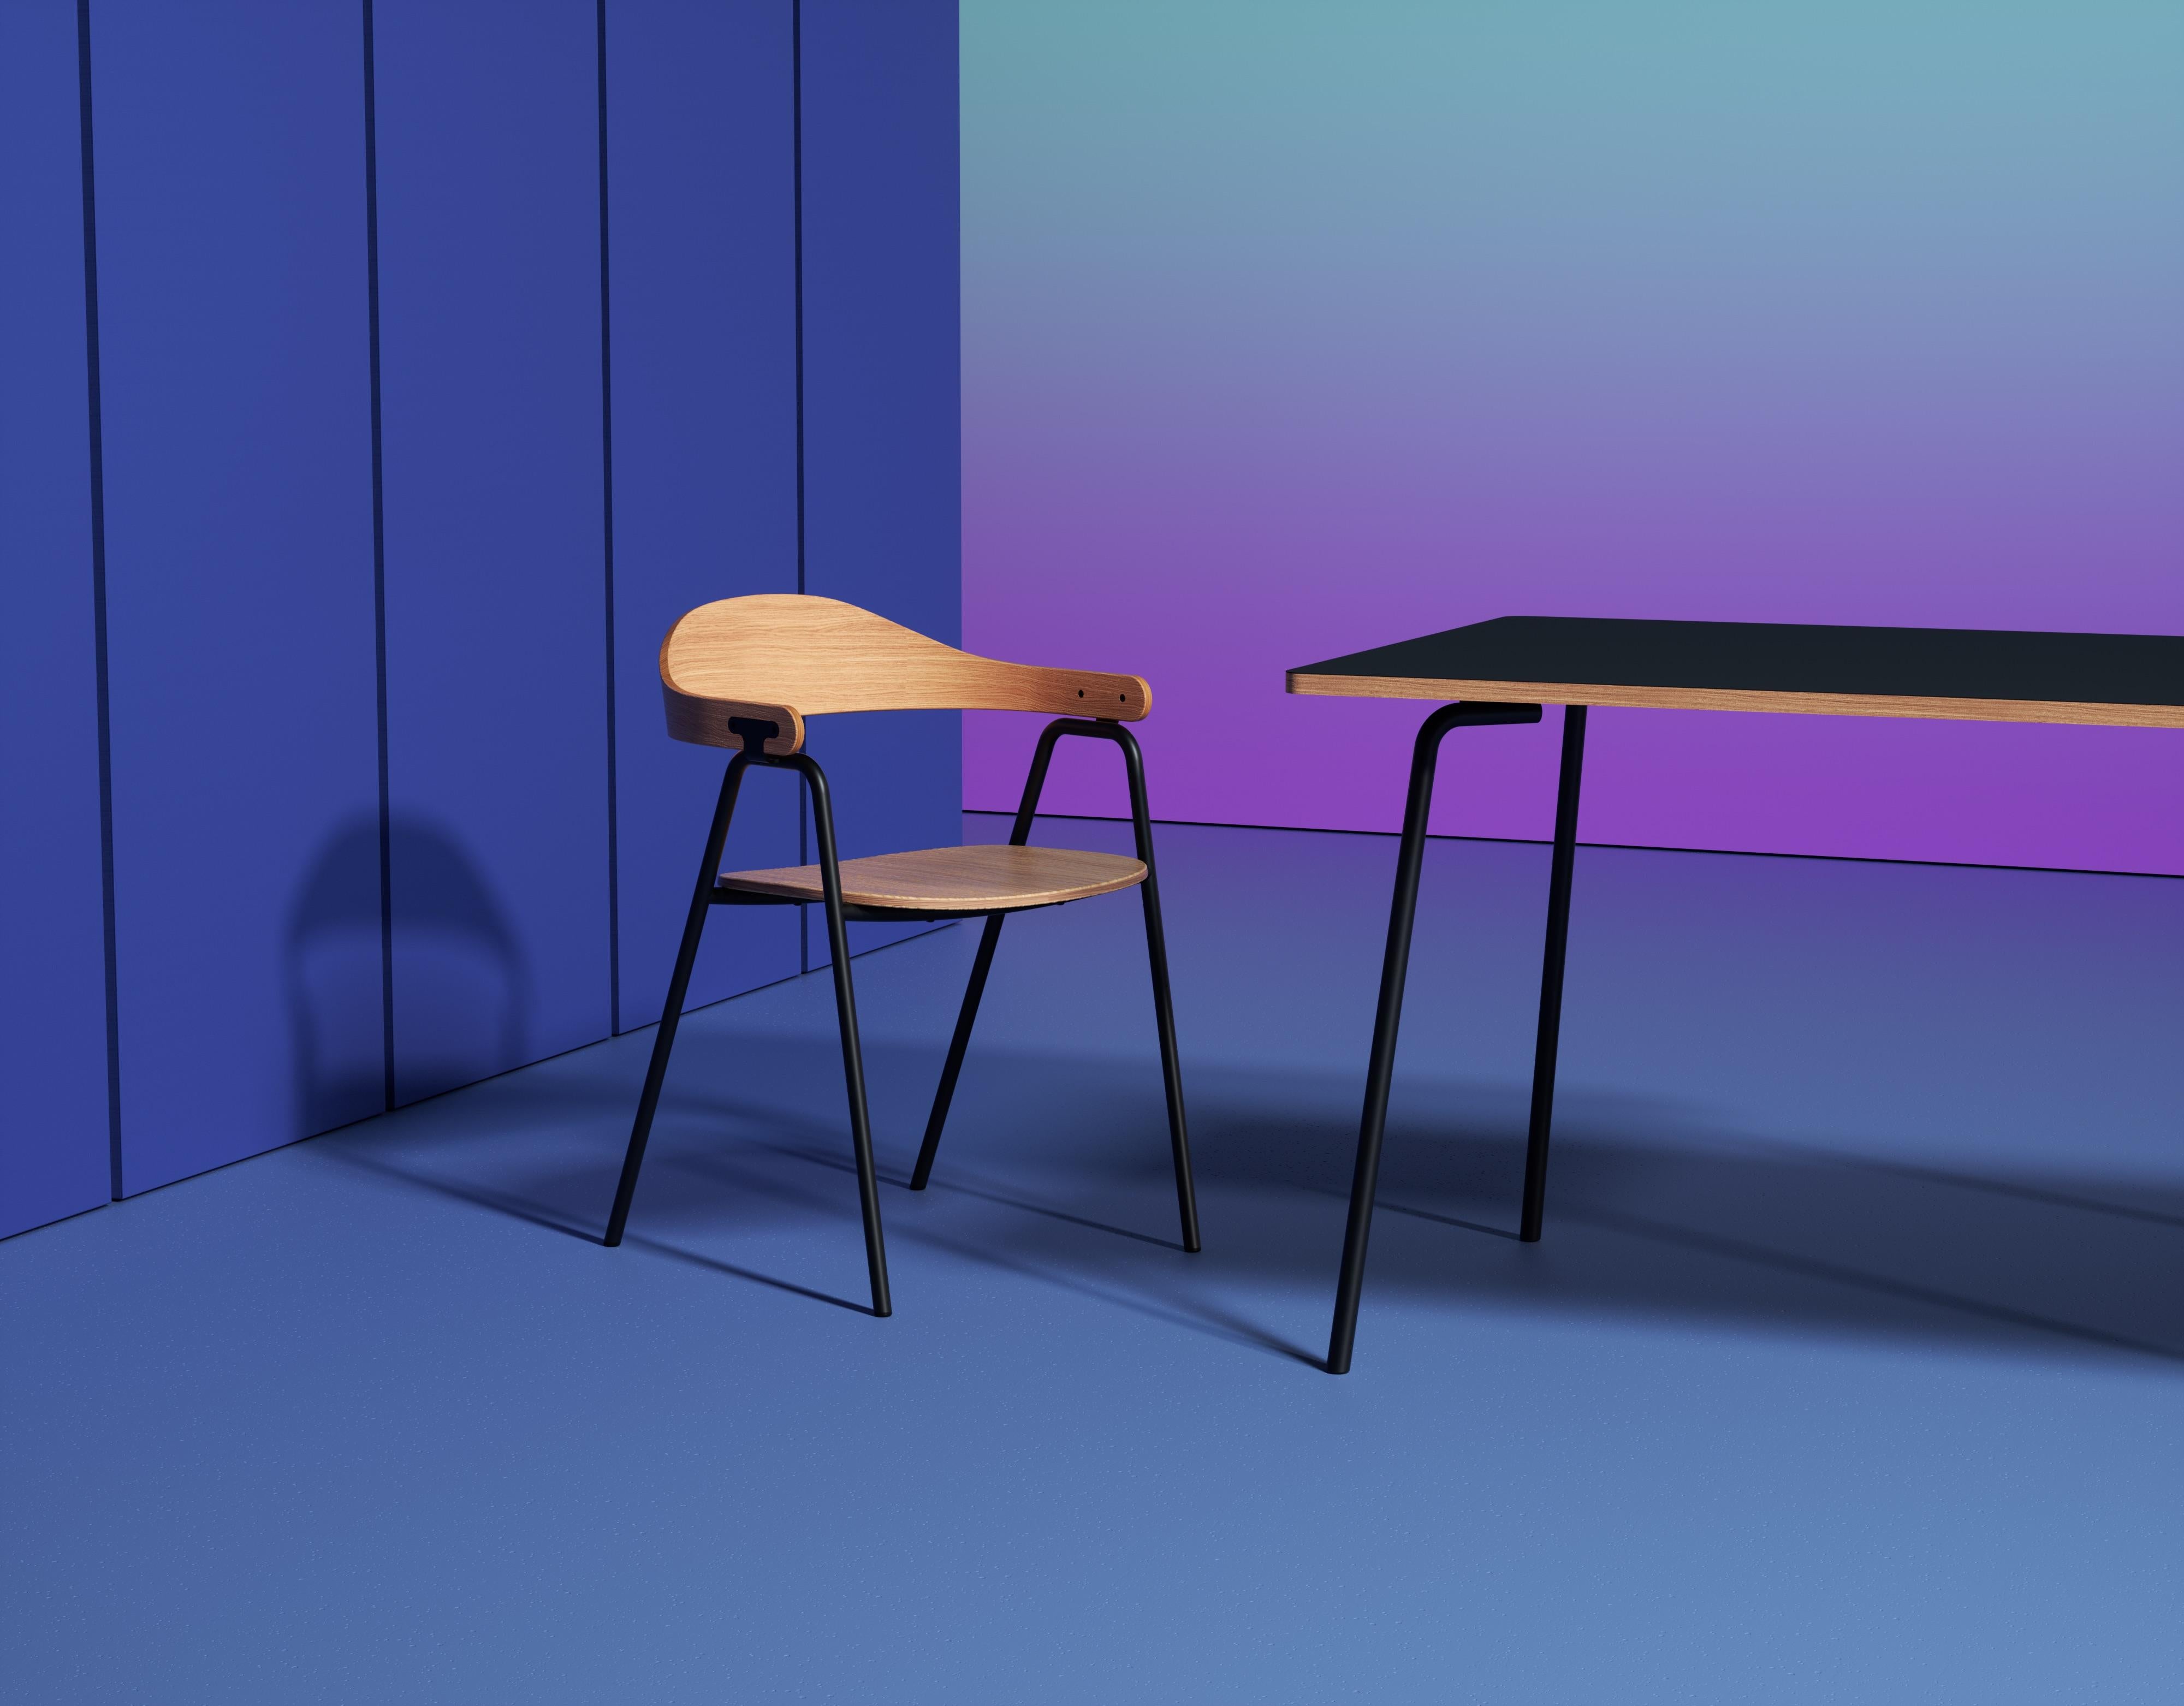 Le fauteuil Otto est une pièce ludique et sophistiquée qui associe une structure métallique simple et fonctionnelle à un dossier et à une assise sculpturaux et chaleureux en contreplaqué. Le raccord métallique entre l'accoudoir et le cadre